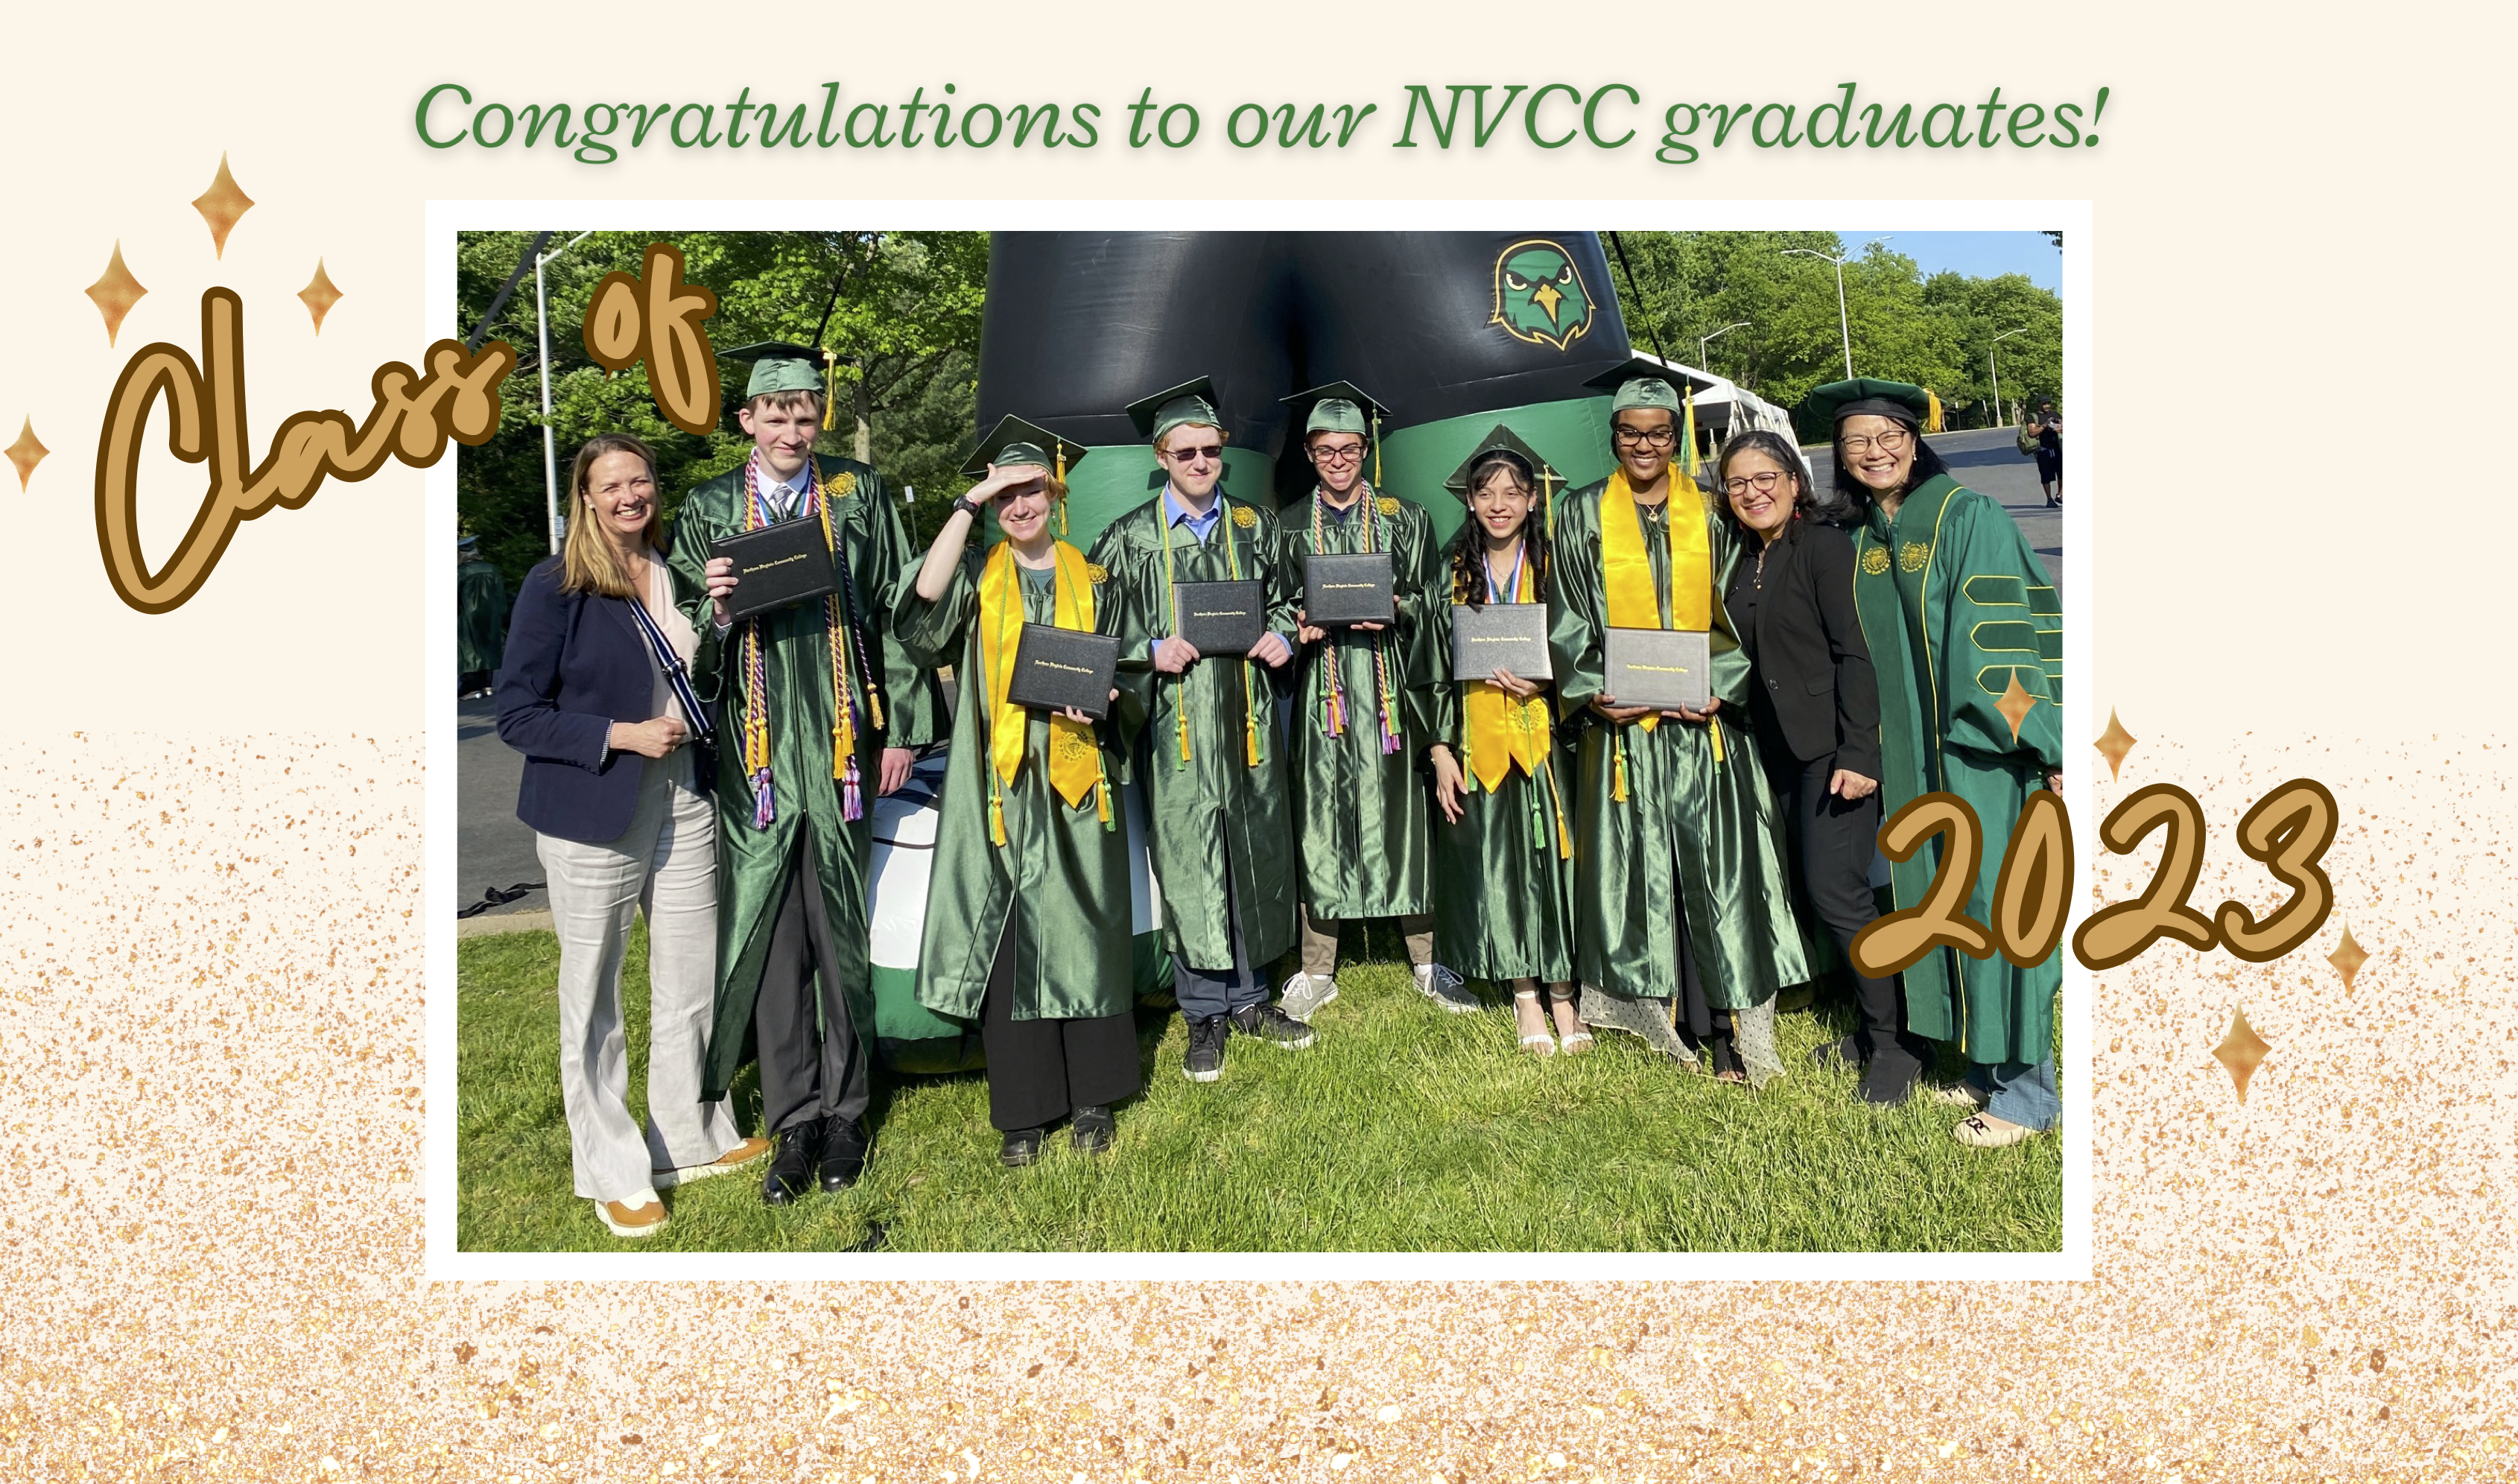 25 alunos do ACC obtêm diplomas de associado ou um certificado uniforme de estudos gerais da NVCC